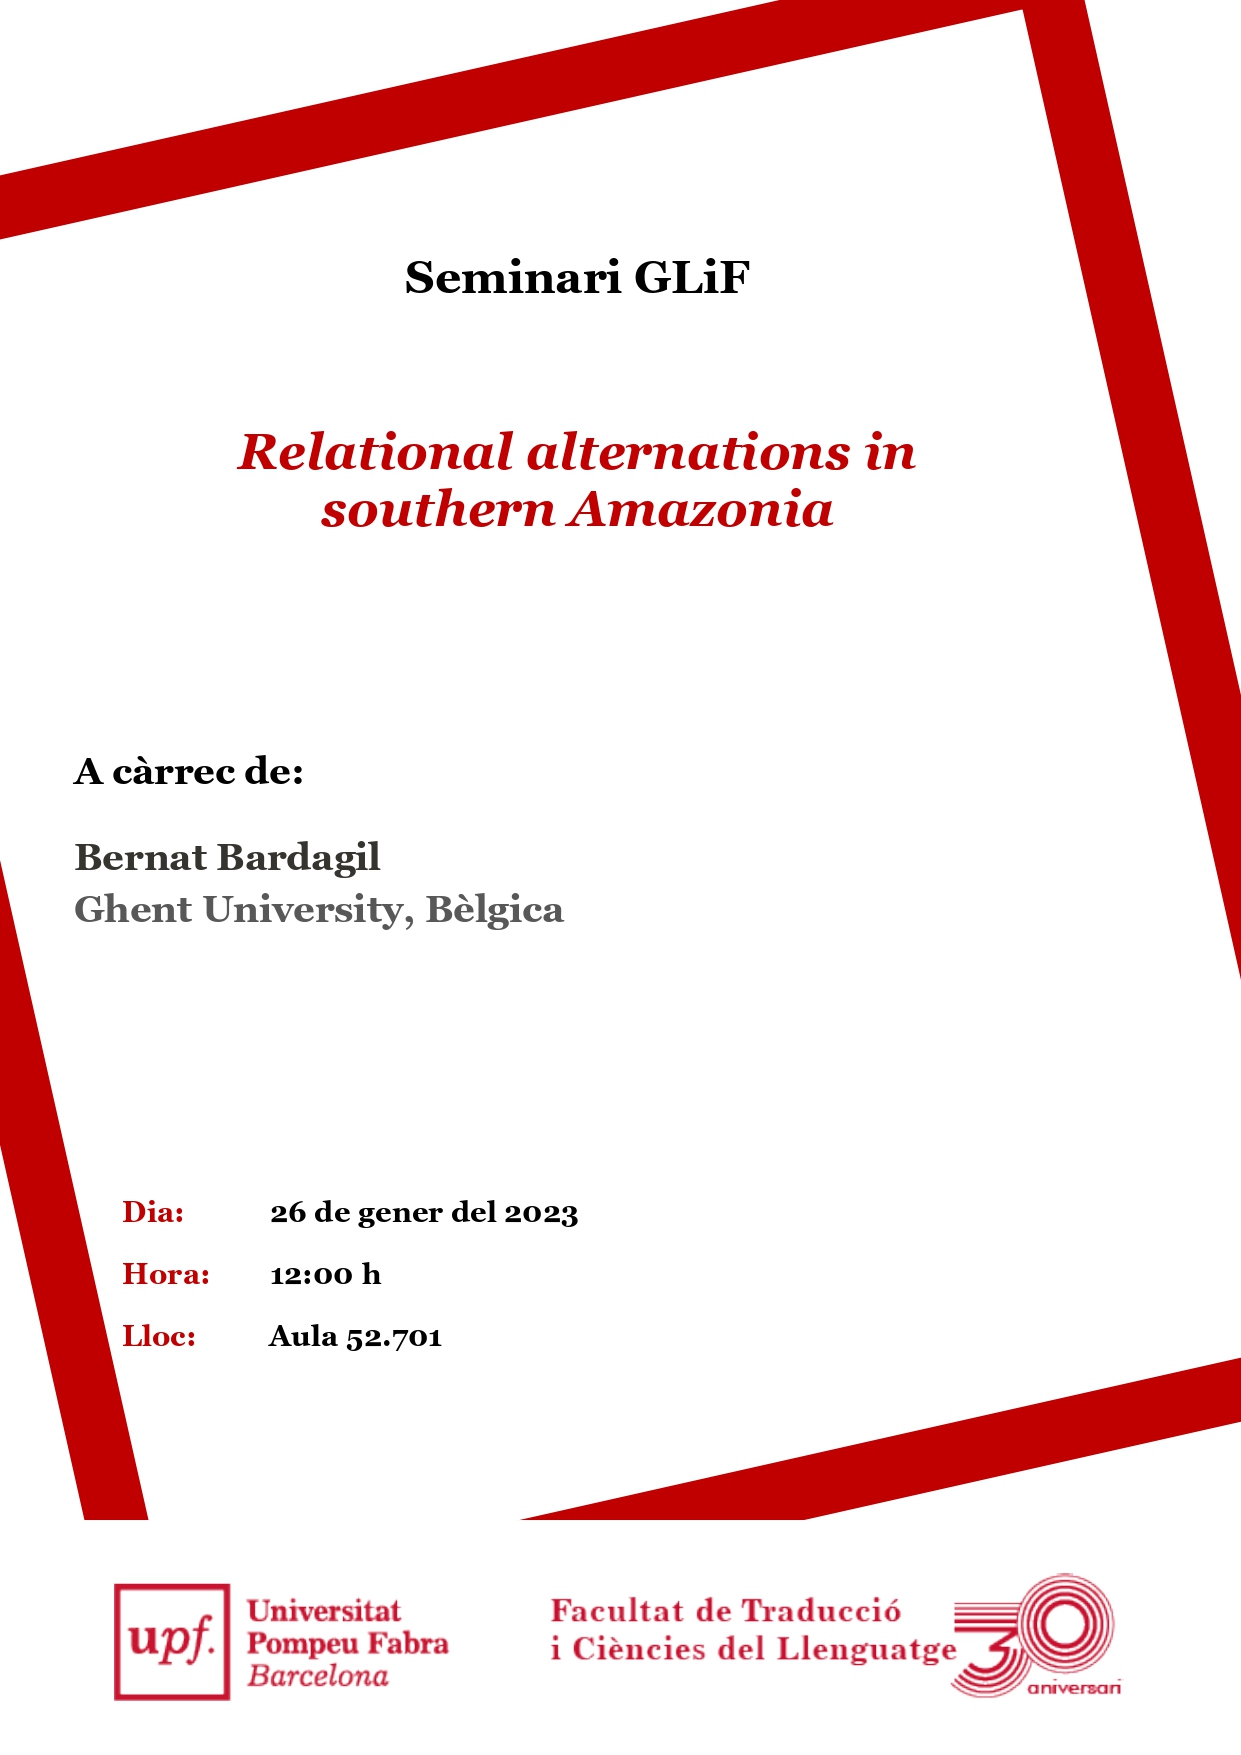 26/01/2023 Seminari del GLiF, a càrrec de Bernat Bardagil (Ghent University)